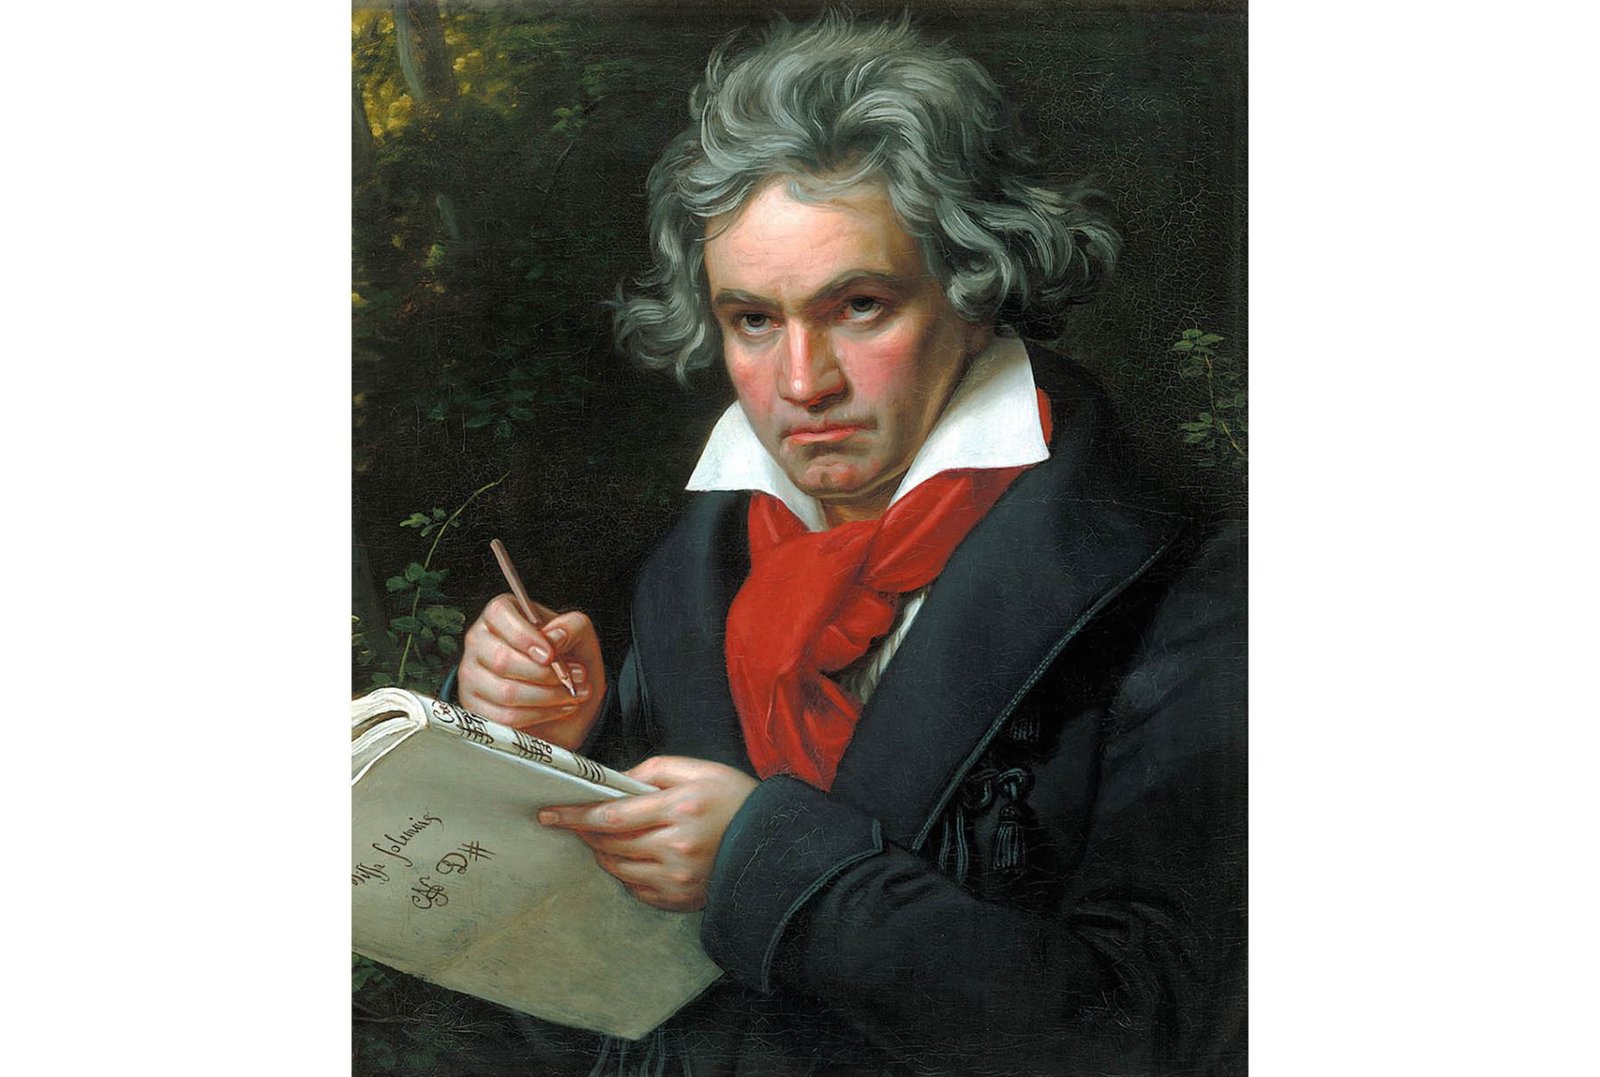 Museo de Viena homenajea a Beethoven por 250 aniversario de su nacimiento